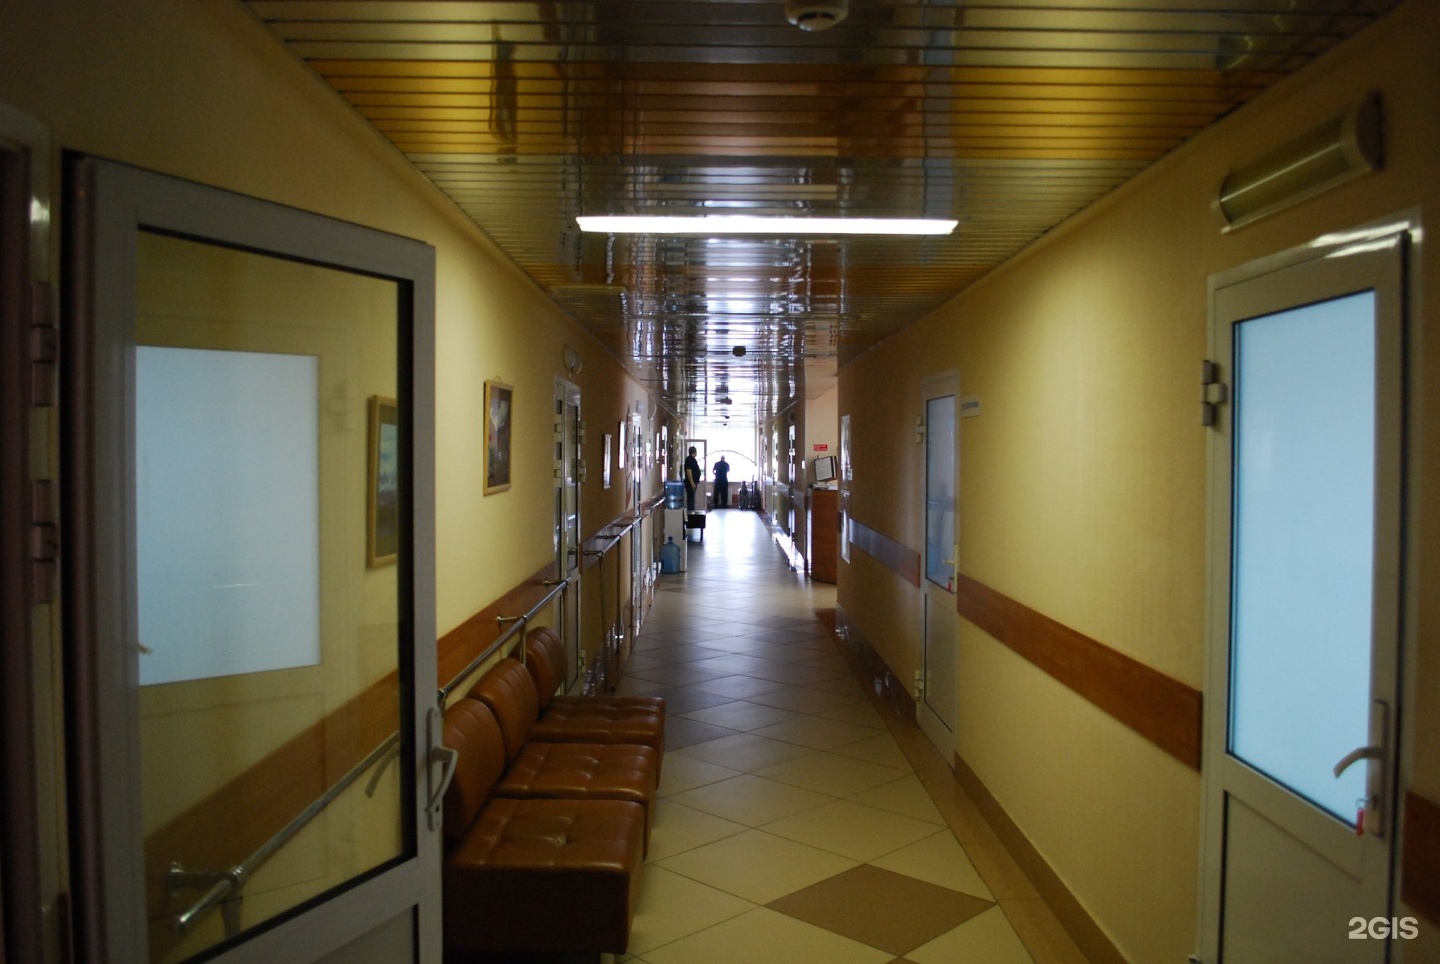 Сайт госпиталя ветеранов кемерово. Госпиталь ветеранов Кемерово. Кемерово 50 лет октября 10 госпиталь ветеранов войн. Фото в госпитале для ветеранов войны в Кемерово.